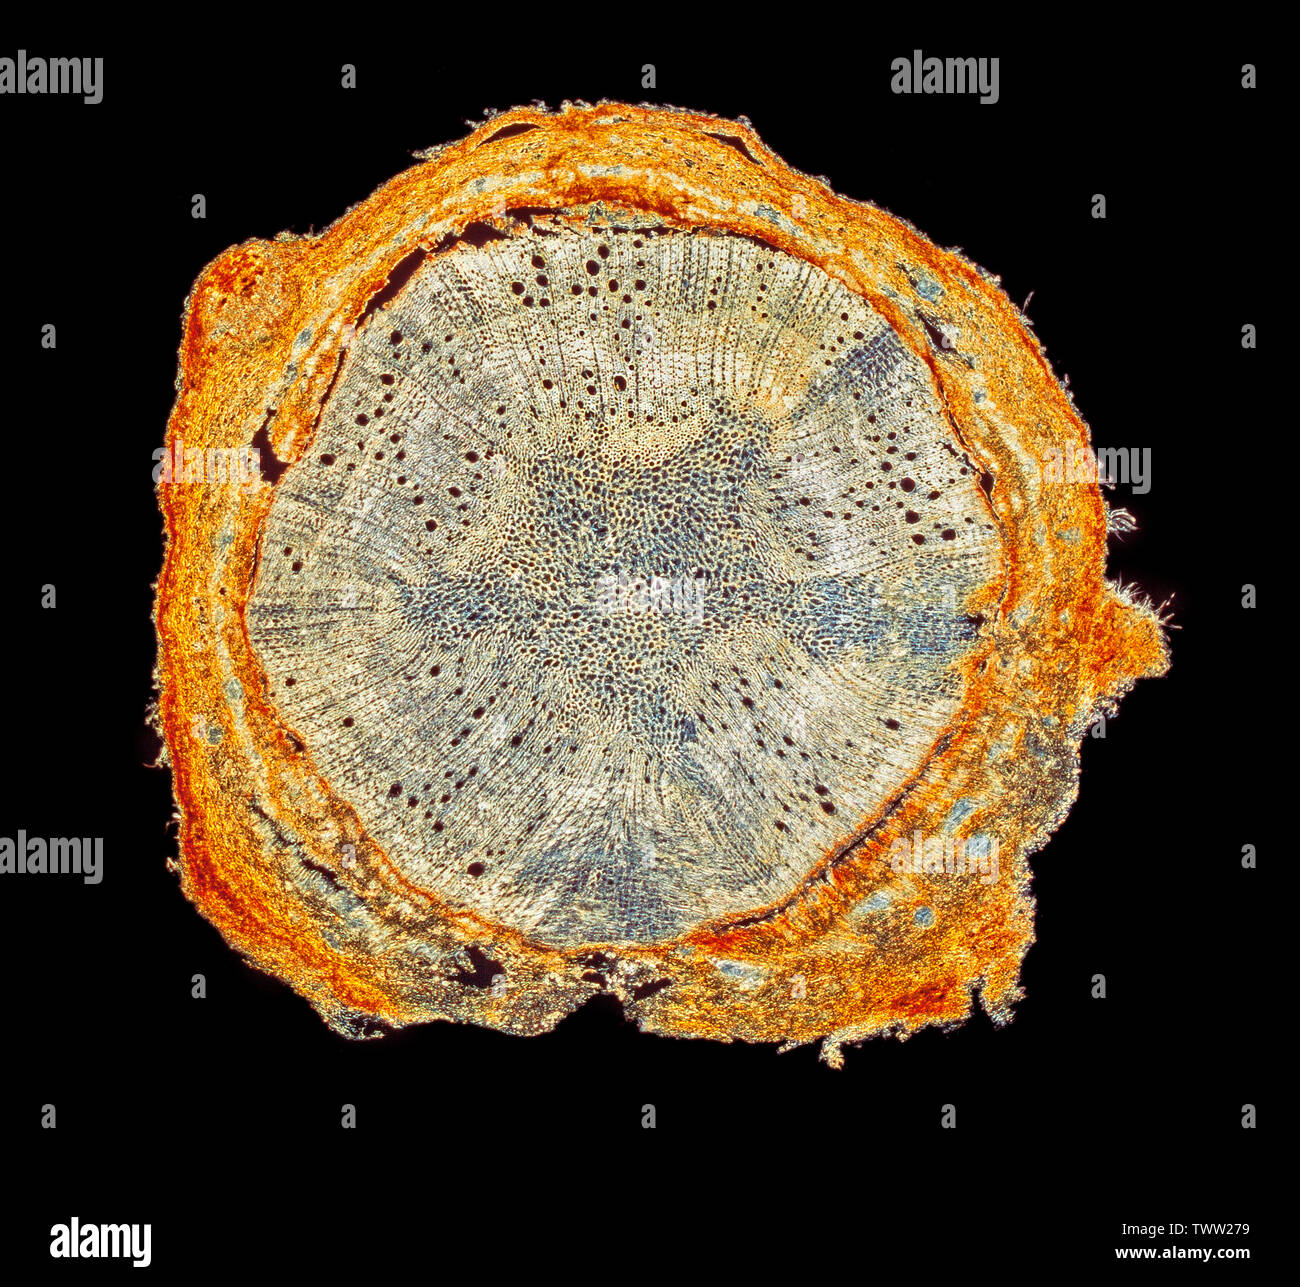 Quercus suber, TS section, communément appelé le chêne-liège, darkfield photomicrographie Banque D'Images